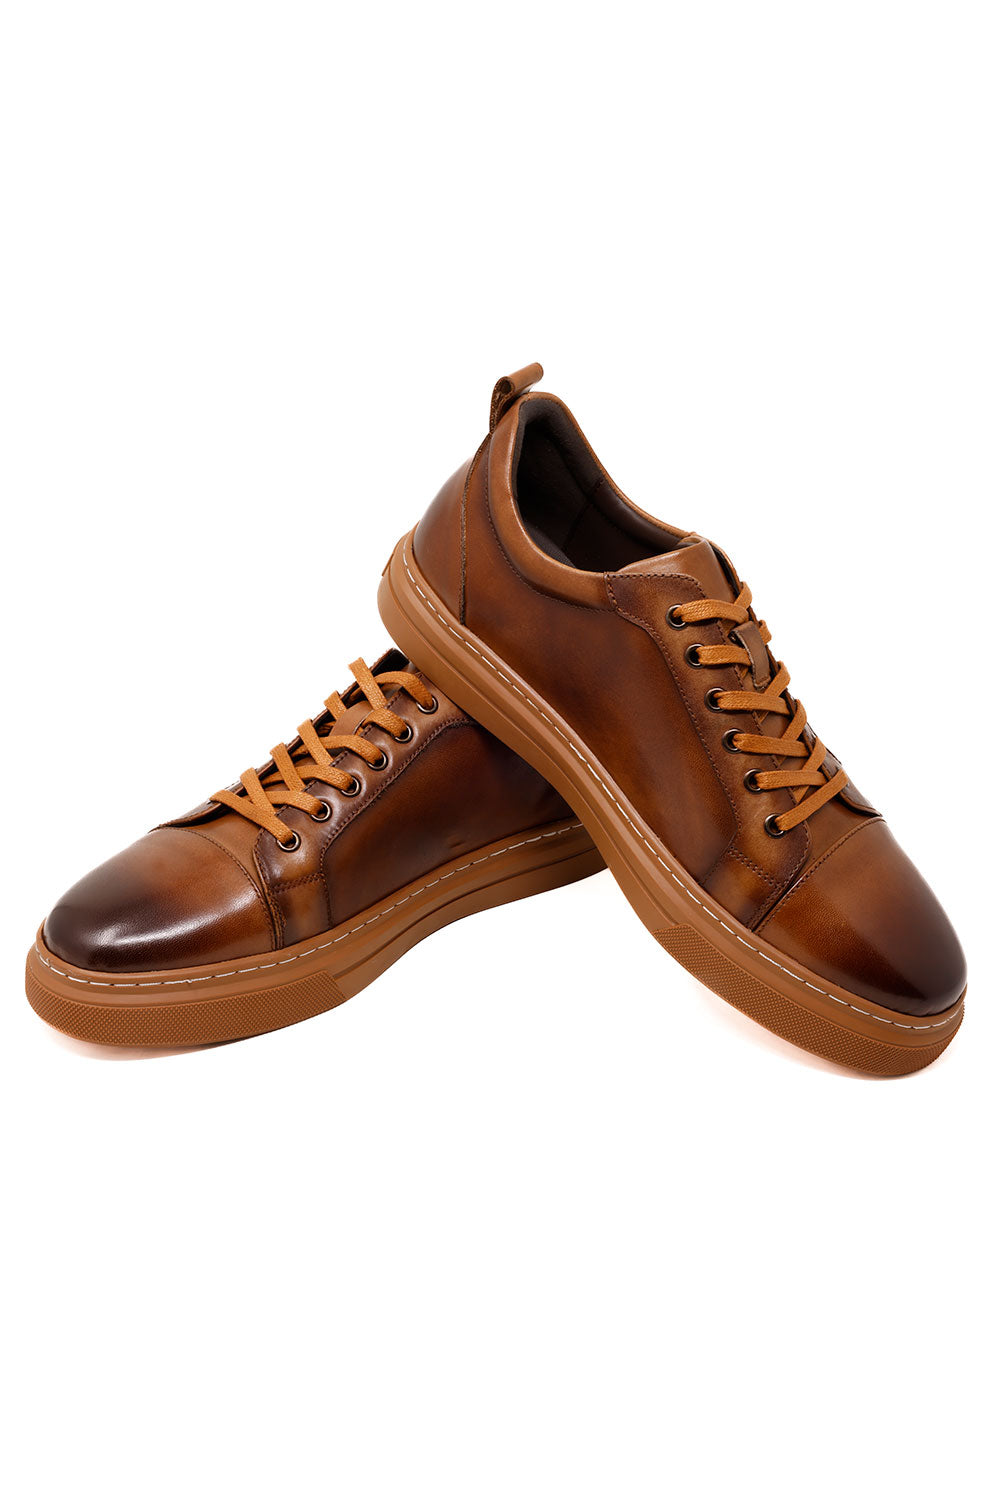 Barabas Men's Premium Leather Low Top Casual Sneaker 3SH21 Brown